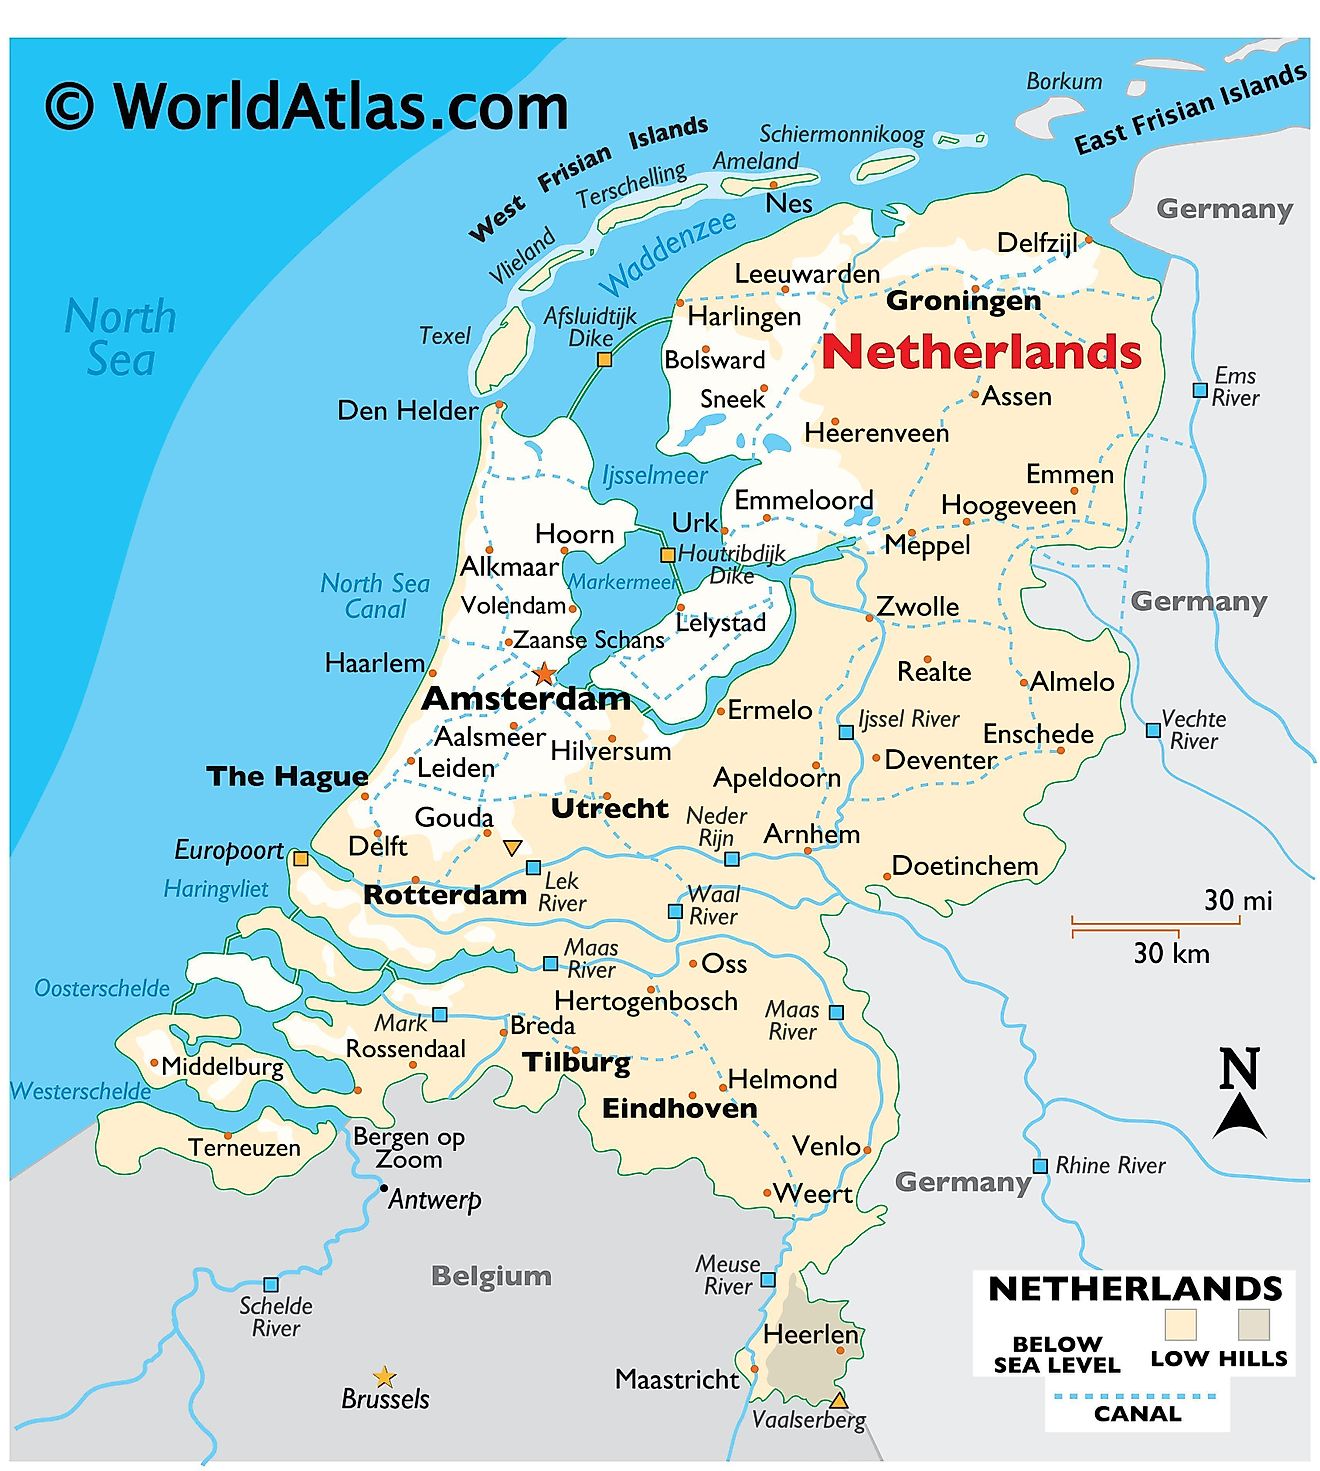 Fysisk karta över Nederländerna som visar relief, internationella gränser, större floder, extrema punkter, viktiga städer, öar etc.